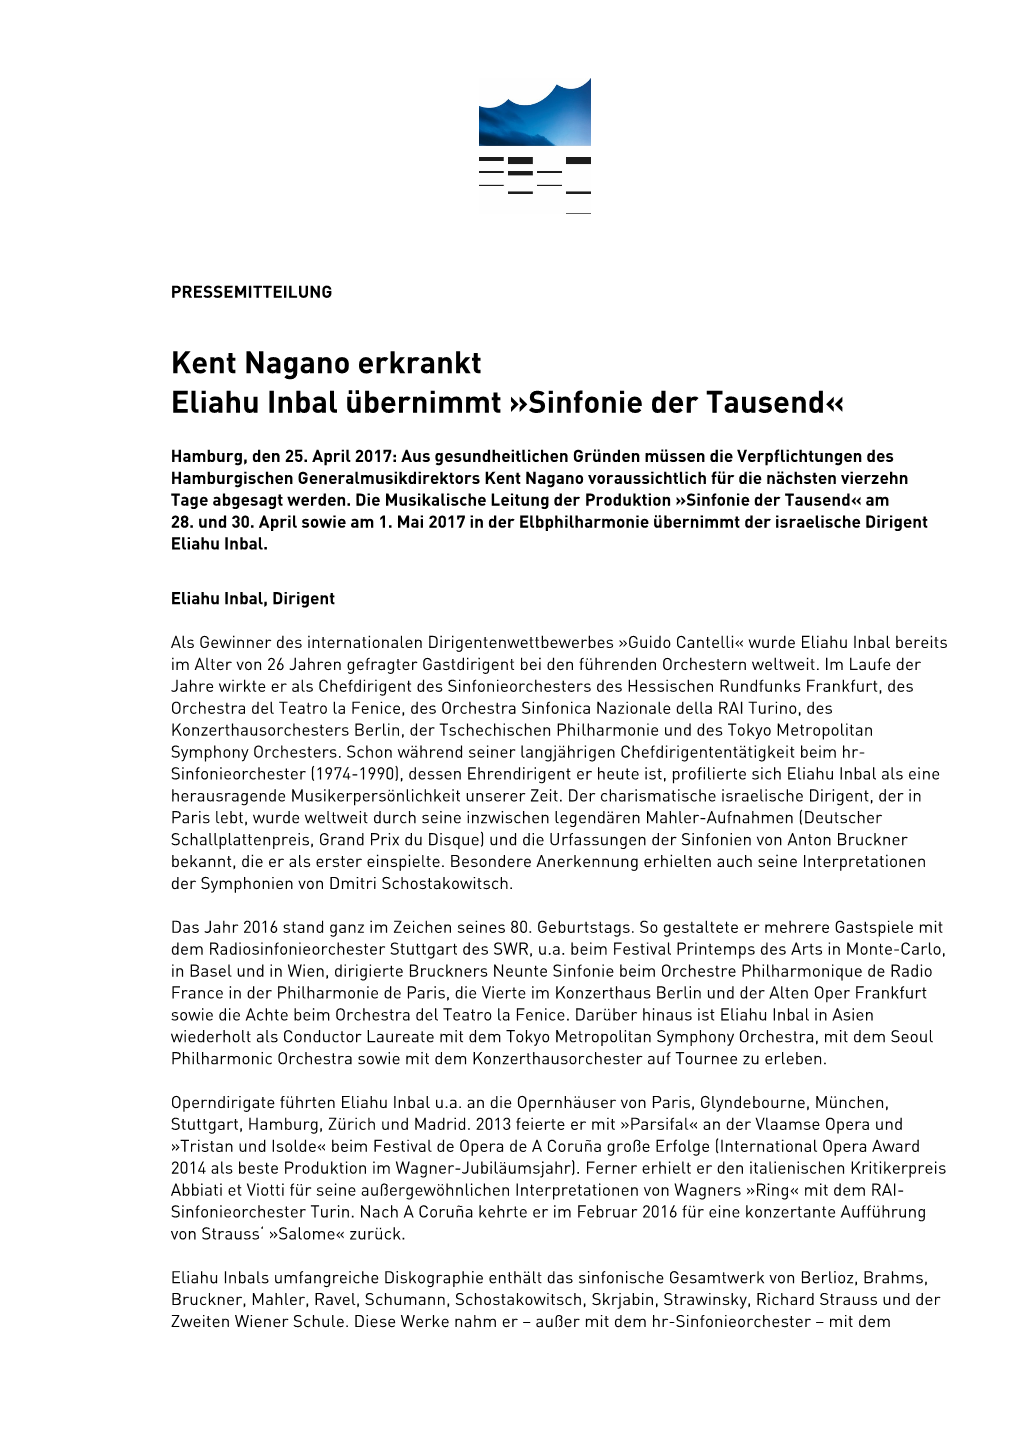 Kent Nagano Erkrankt Eliahu Inbal Übernimmt »Sinfonie Der Tausend«